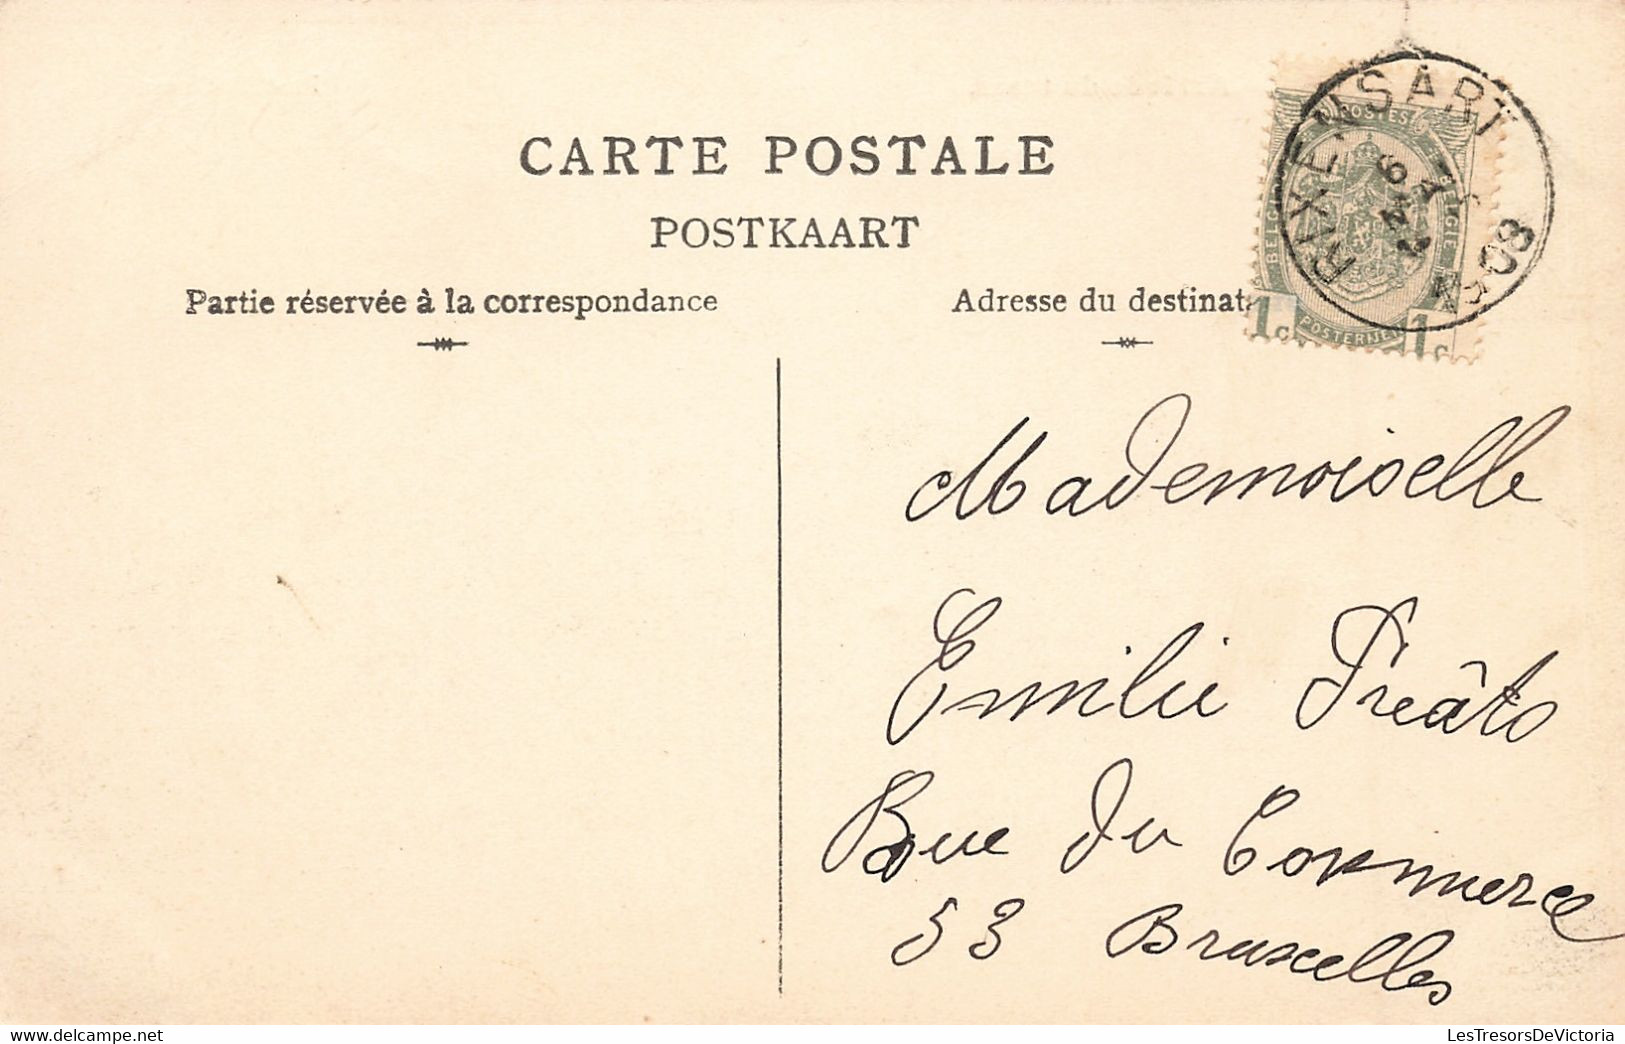 CPA - Belgique - Bourgeois - Arrivée Du Tram - Phot. B. Genval - Oblitéré Rixensart 1908 - Animé - Tram - Rixensart